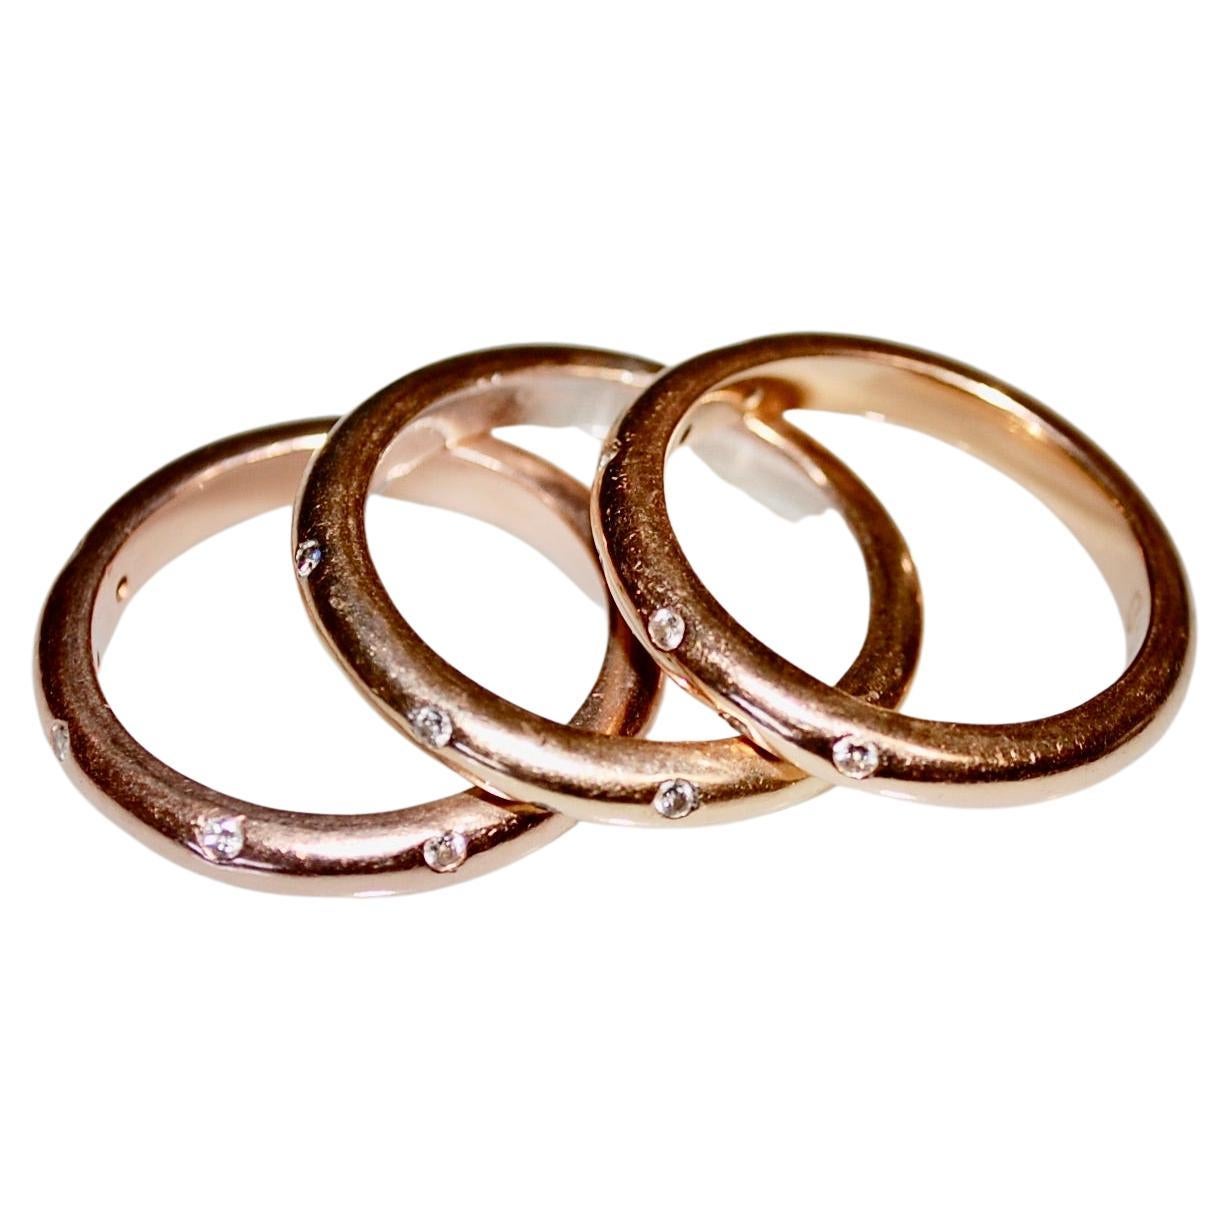 Drei Ringe im Tiffany-Stil aus 18 Karat Gold, besetzt mit 6 kleinen runden Diamanten im Brillantschliff.
Zwei Ringe sind aus Gelbgold und einer aus Roségold, Gesamtgewicht 15 Gramm, ca. 3 mm breit, Größe 7.